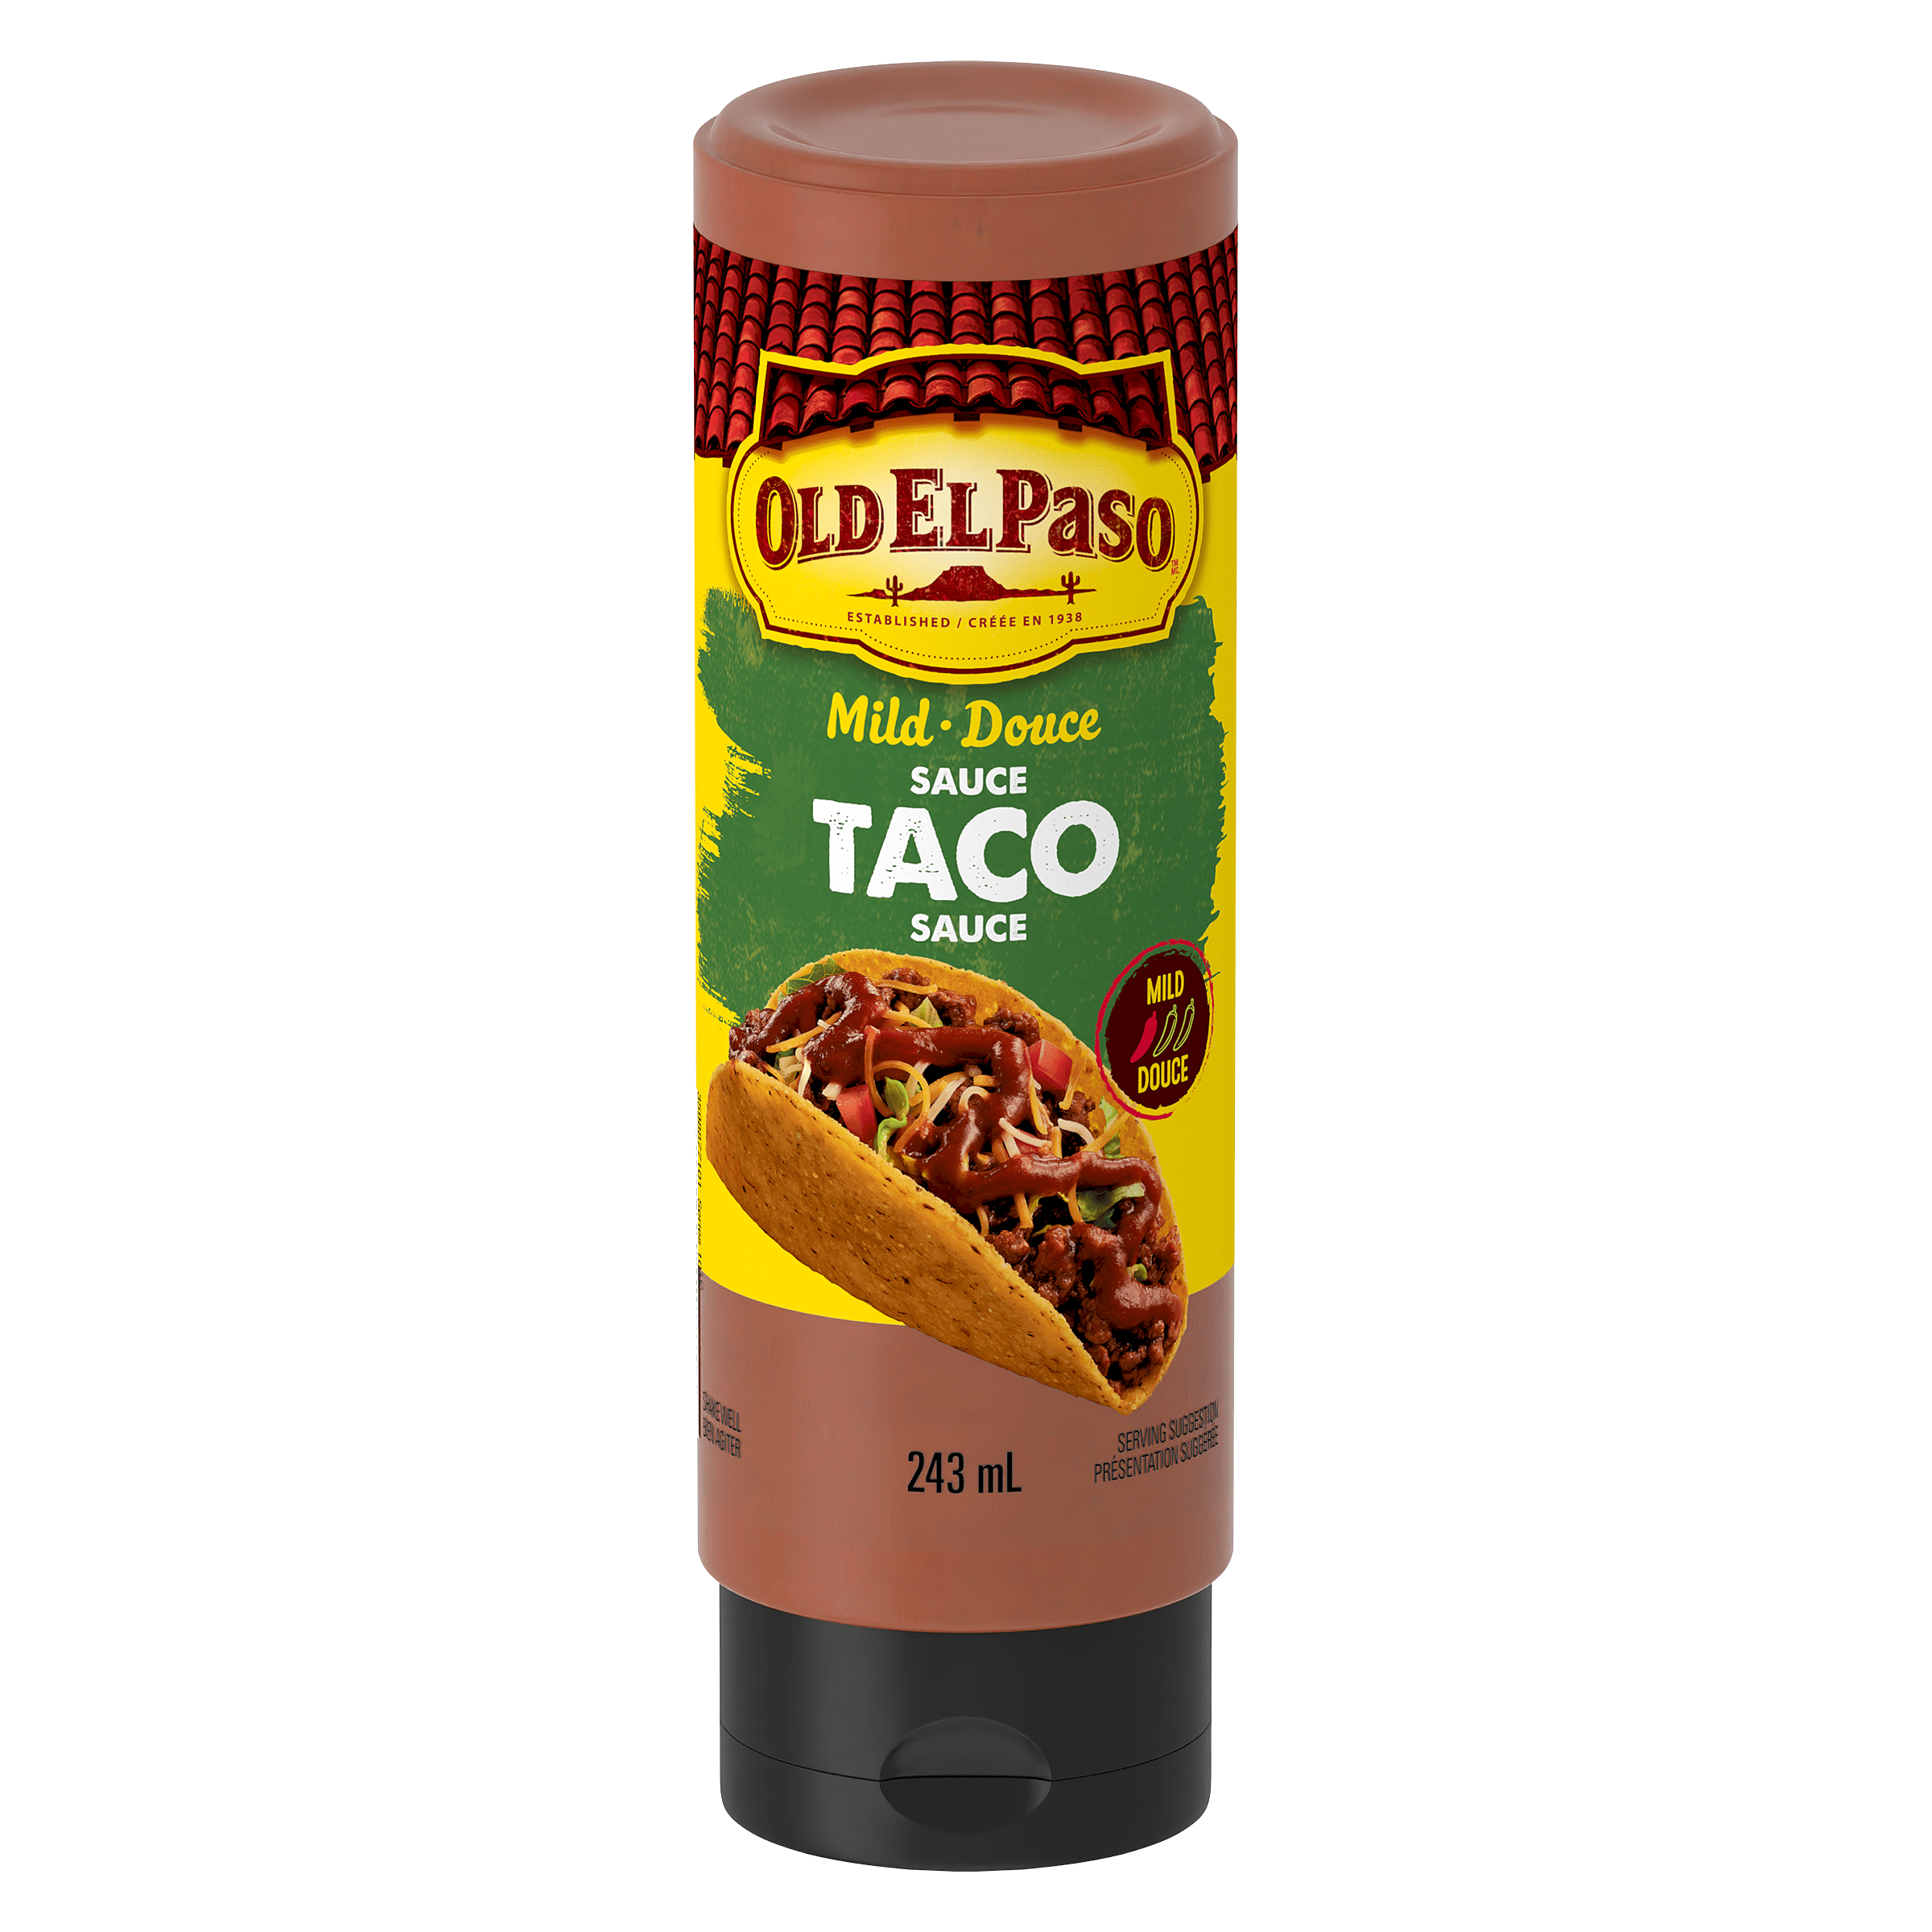 Old El Paso (Brand)